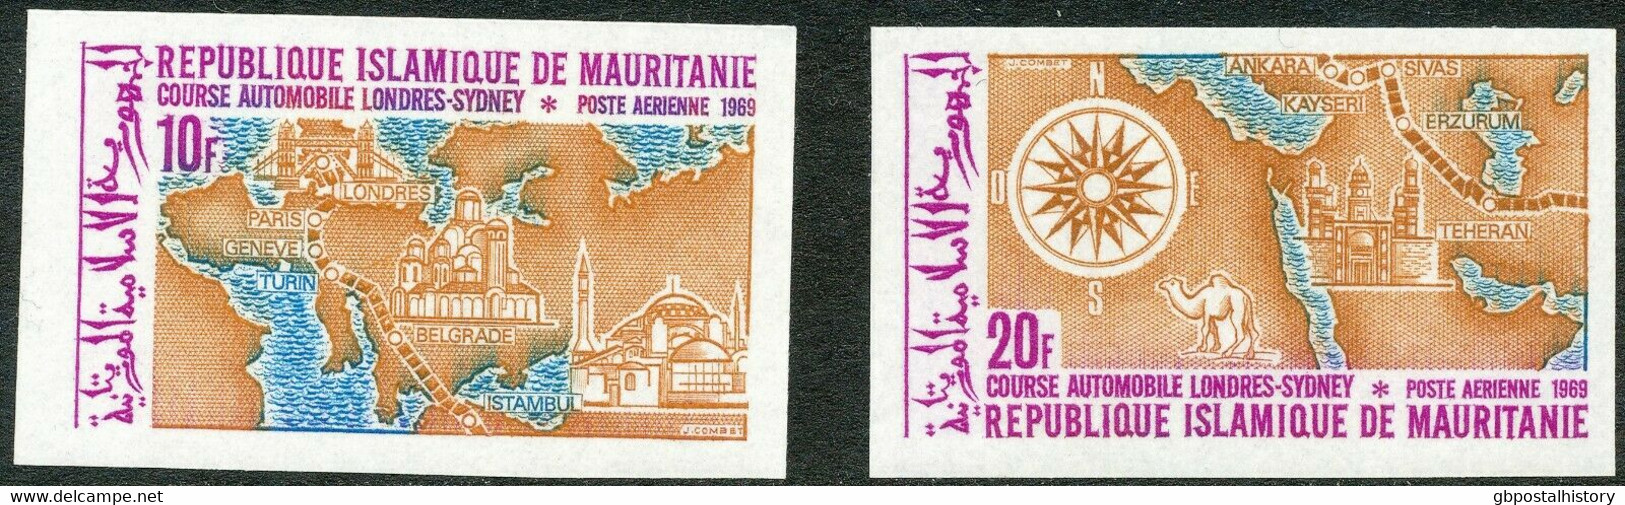 MAURETANIEN 1969 Transkontinentale Autorallye London-Sydney U/M Set IMPERFORATED - Mauritania (1960-...)